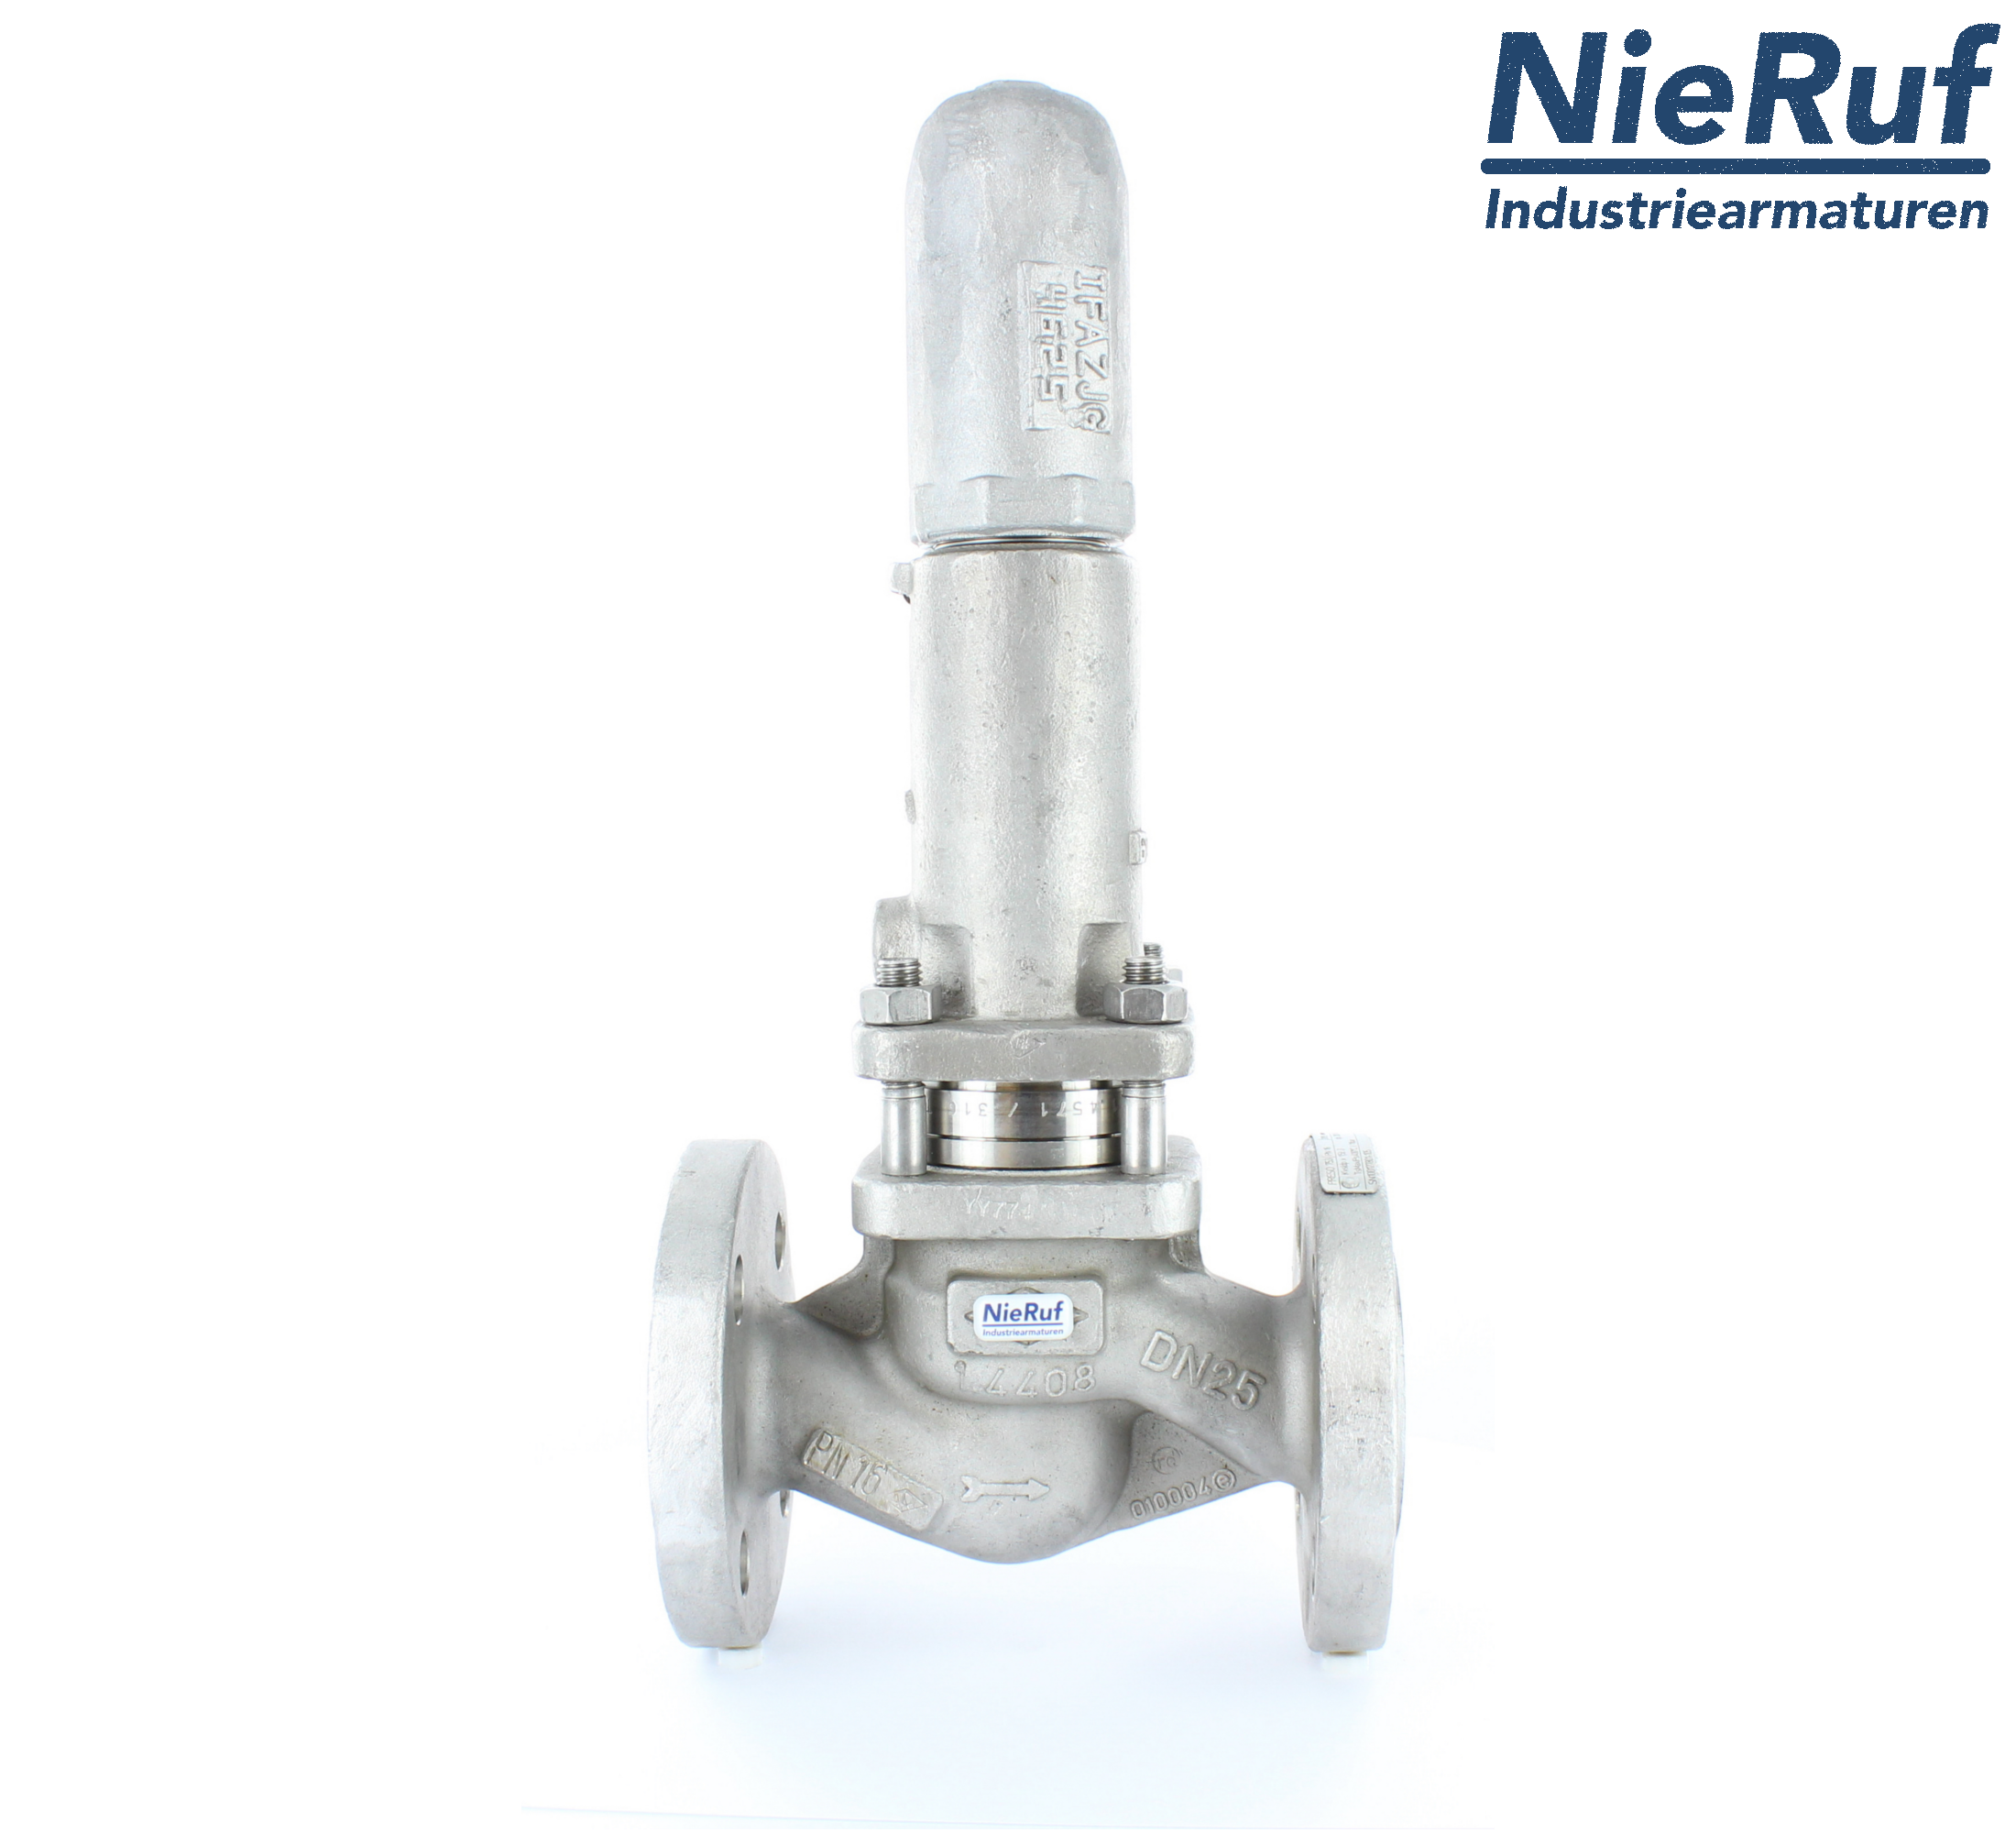 piston overflow valve DN 100 UV13 cast iron 1.0619+N 2,0 - 5,0 bar